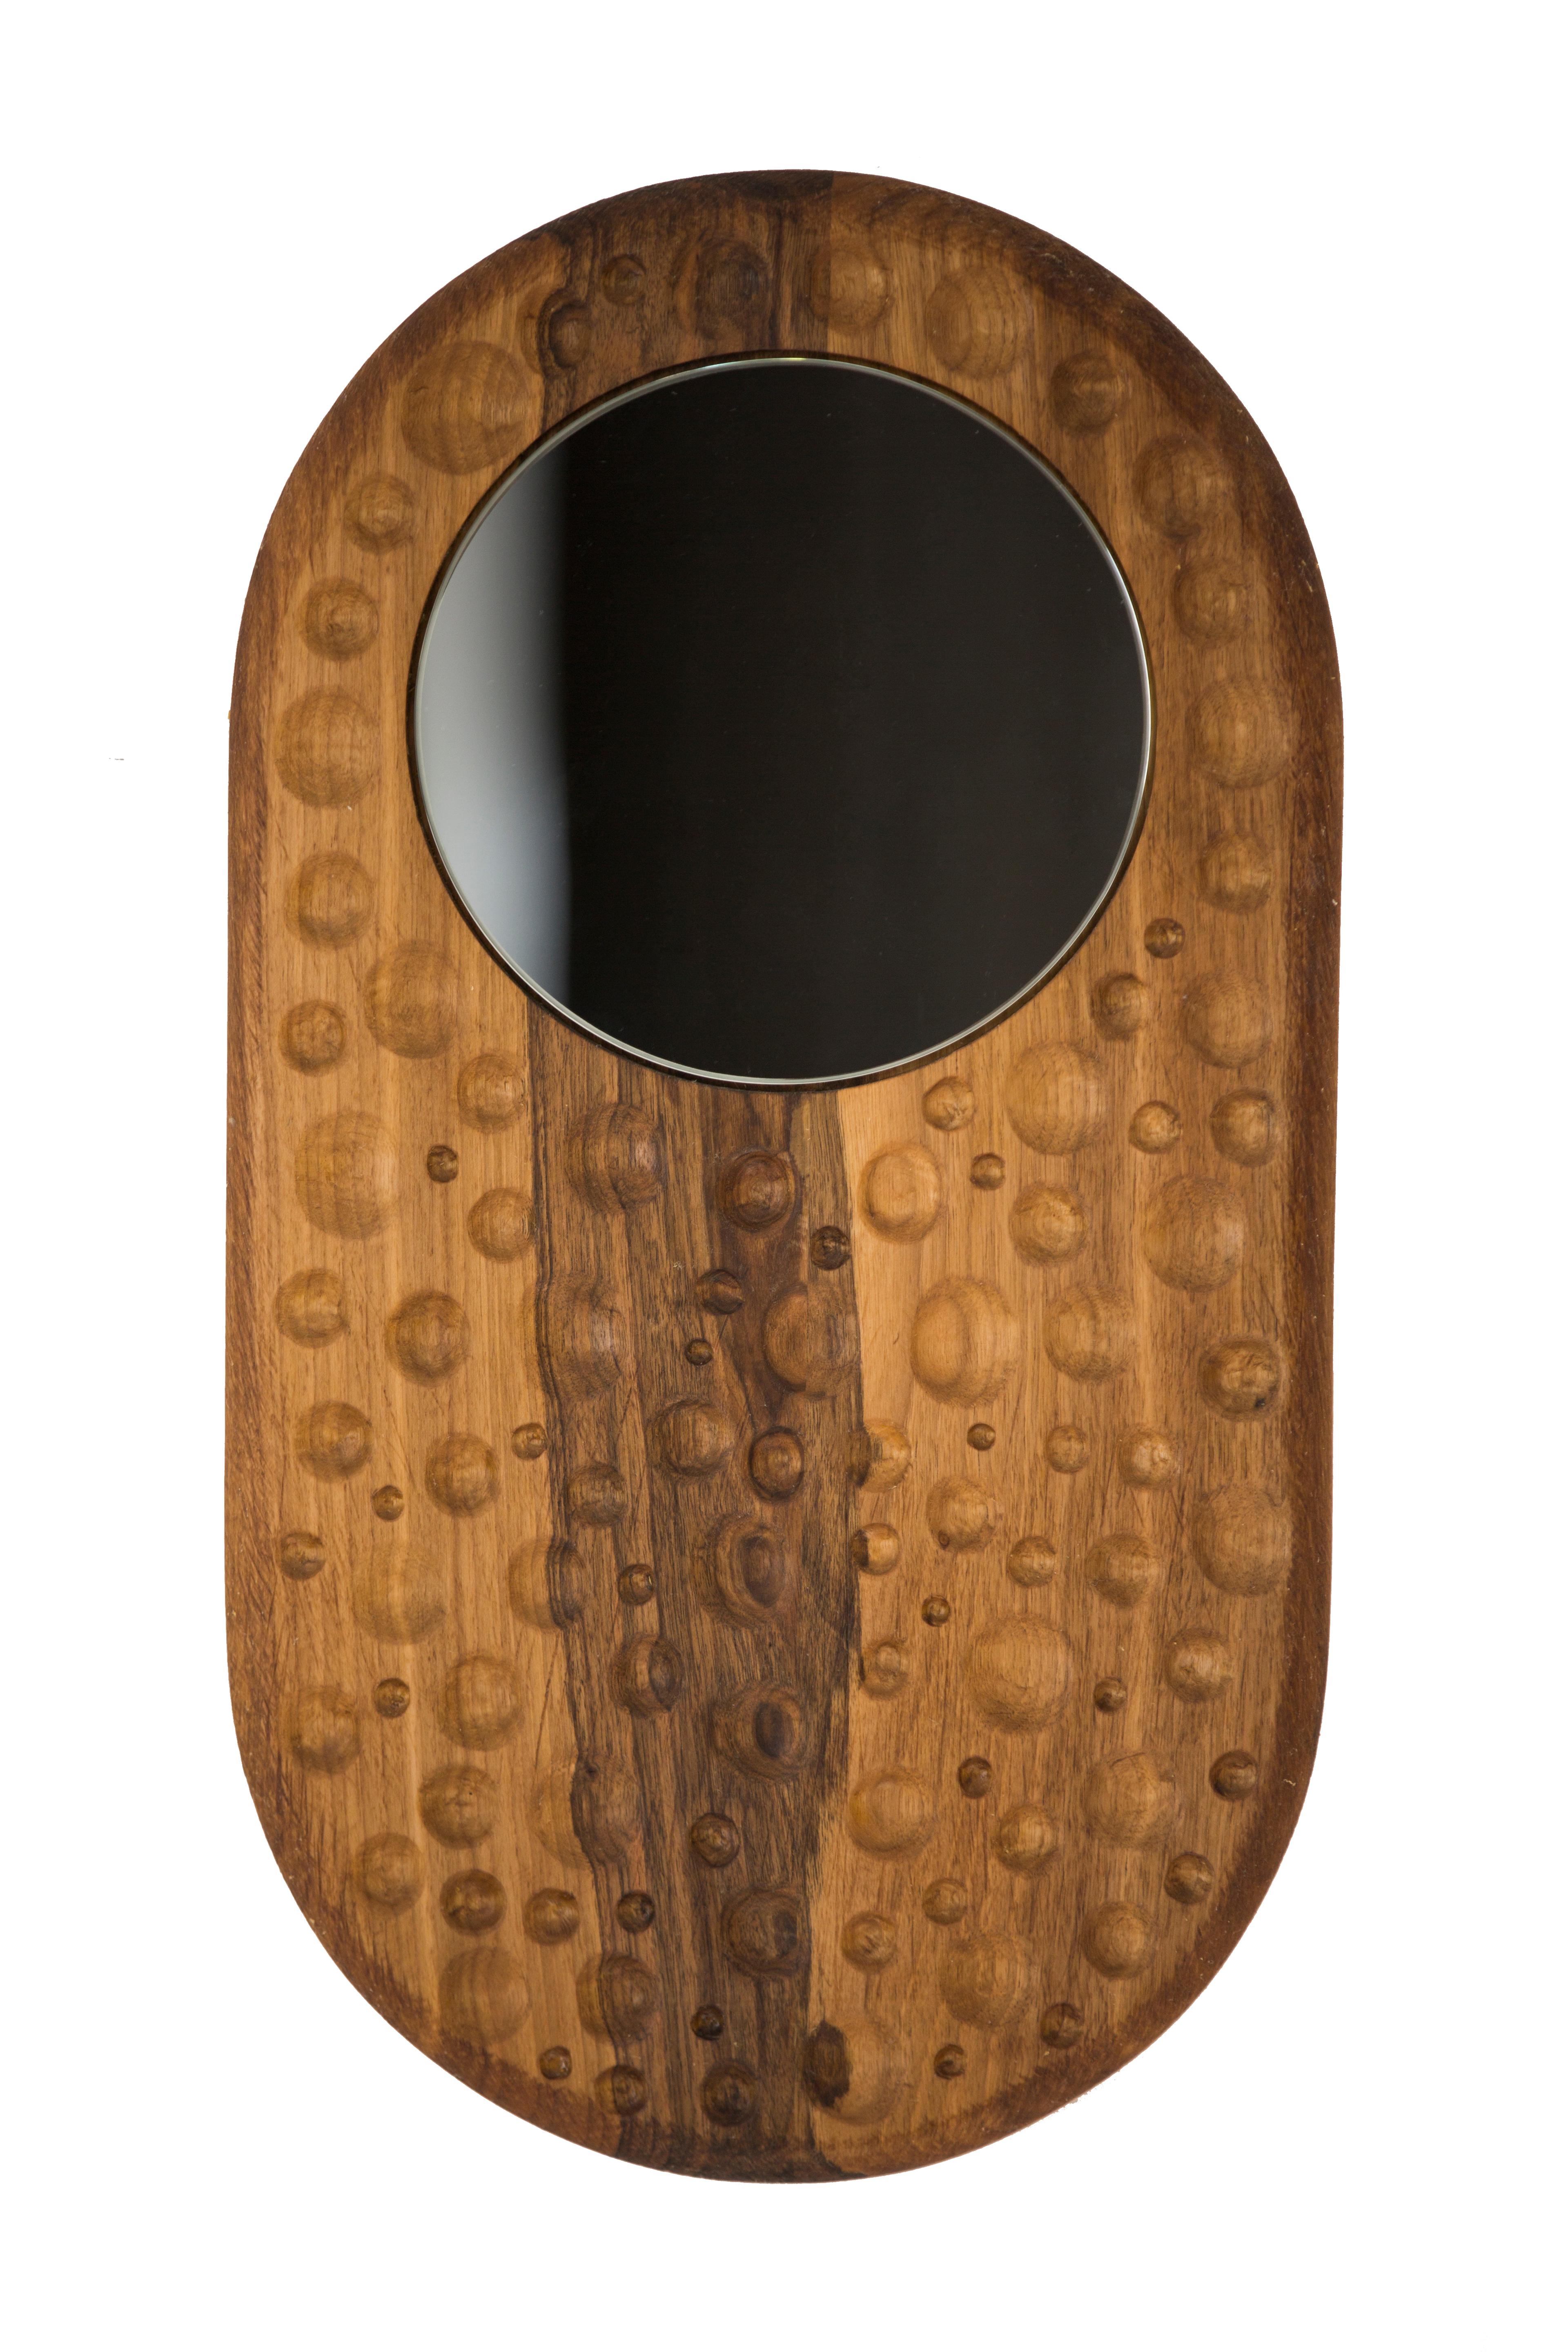 Bumerang Spiegel von Rectangle Studio
Abmessungen: B 26 x T 2 x H 50 cm 
MATERIALIEN: Massiver Nussbaum, Naturholzöl, Naturspiegel

Der Spiegel 